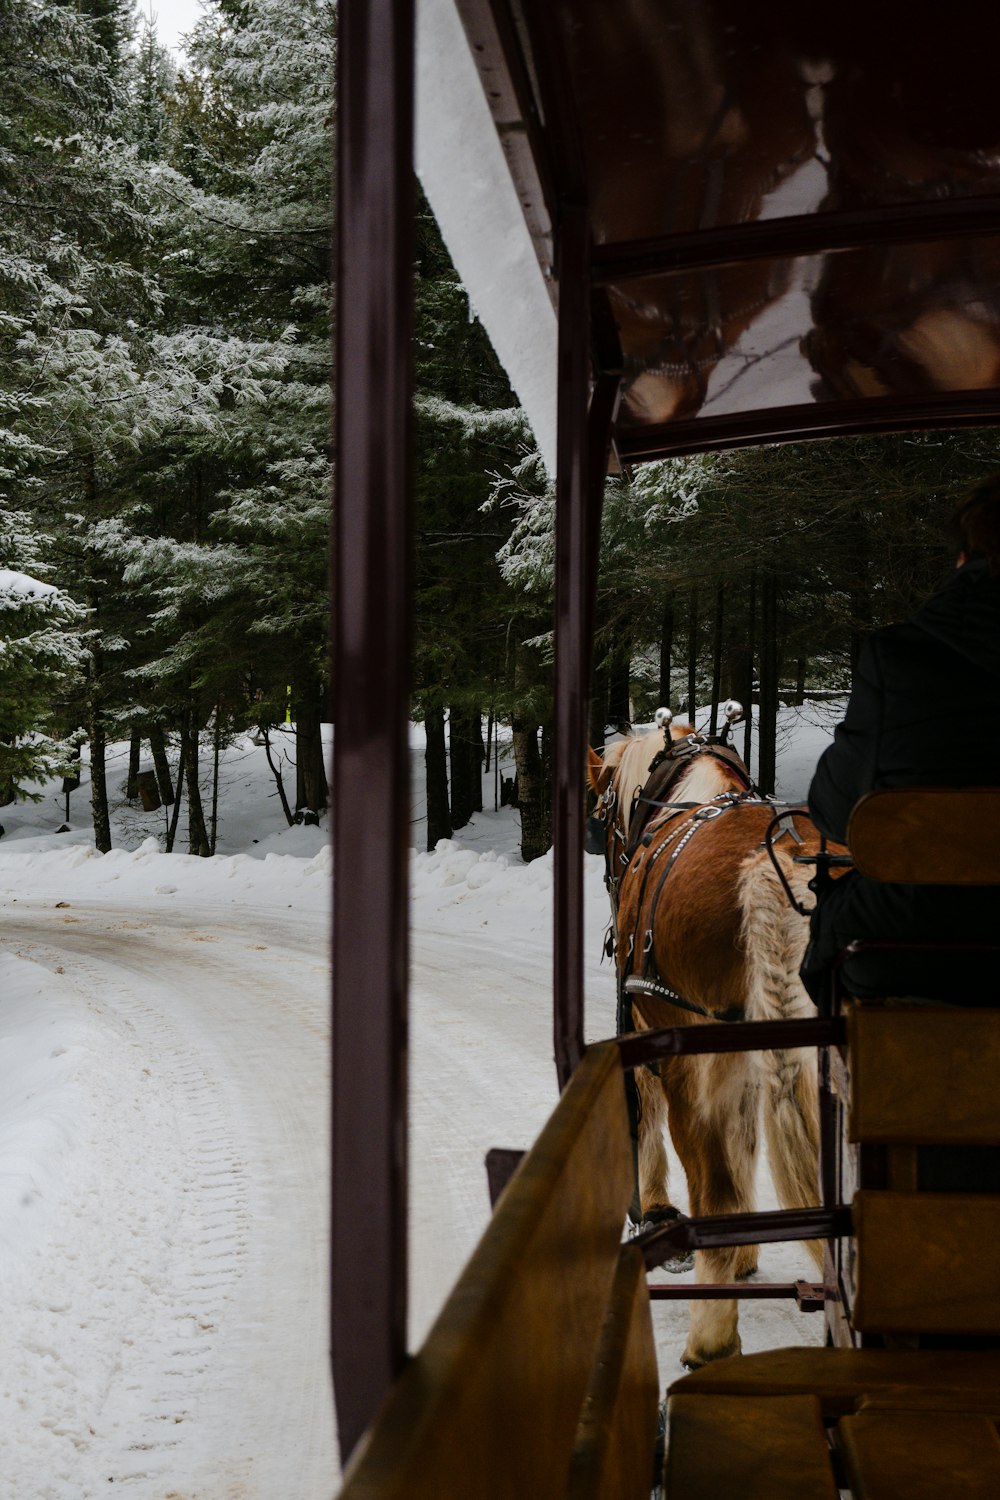 Un carruaje tirado por caballos que viaja por un camino cubierto de nieve